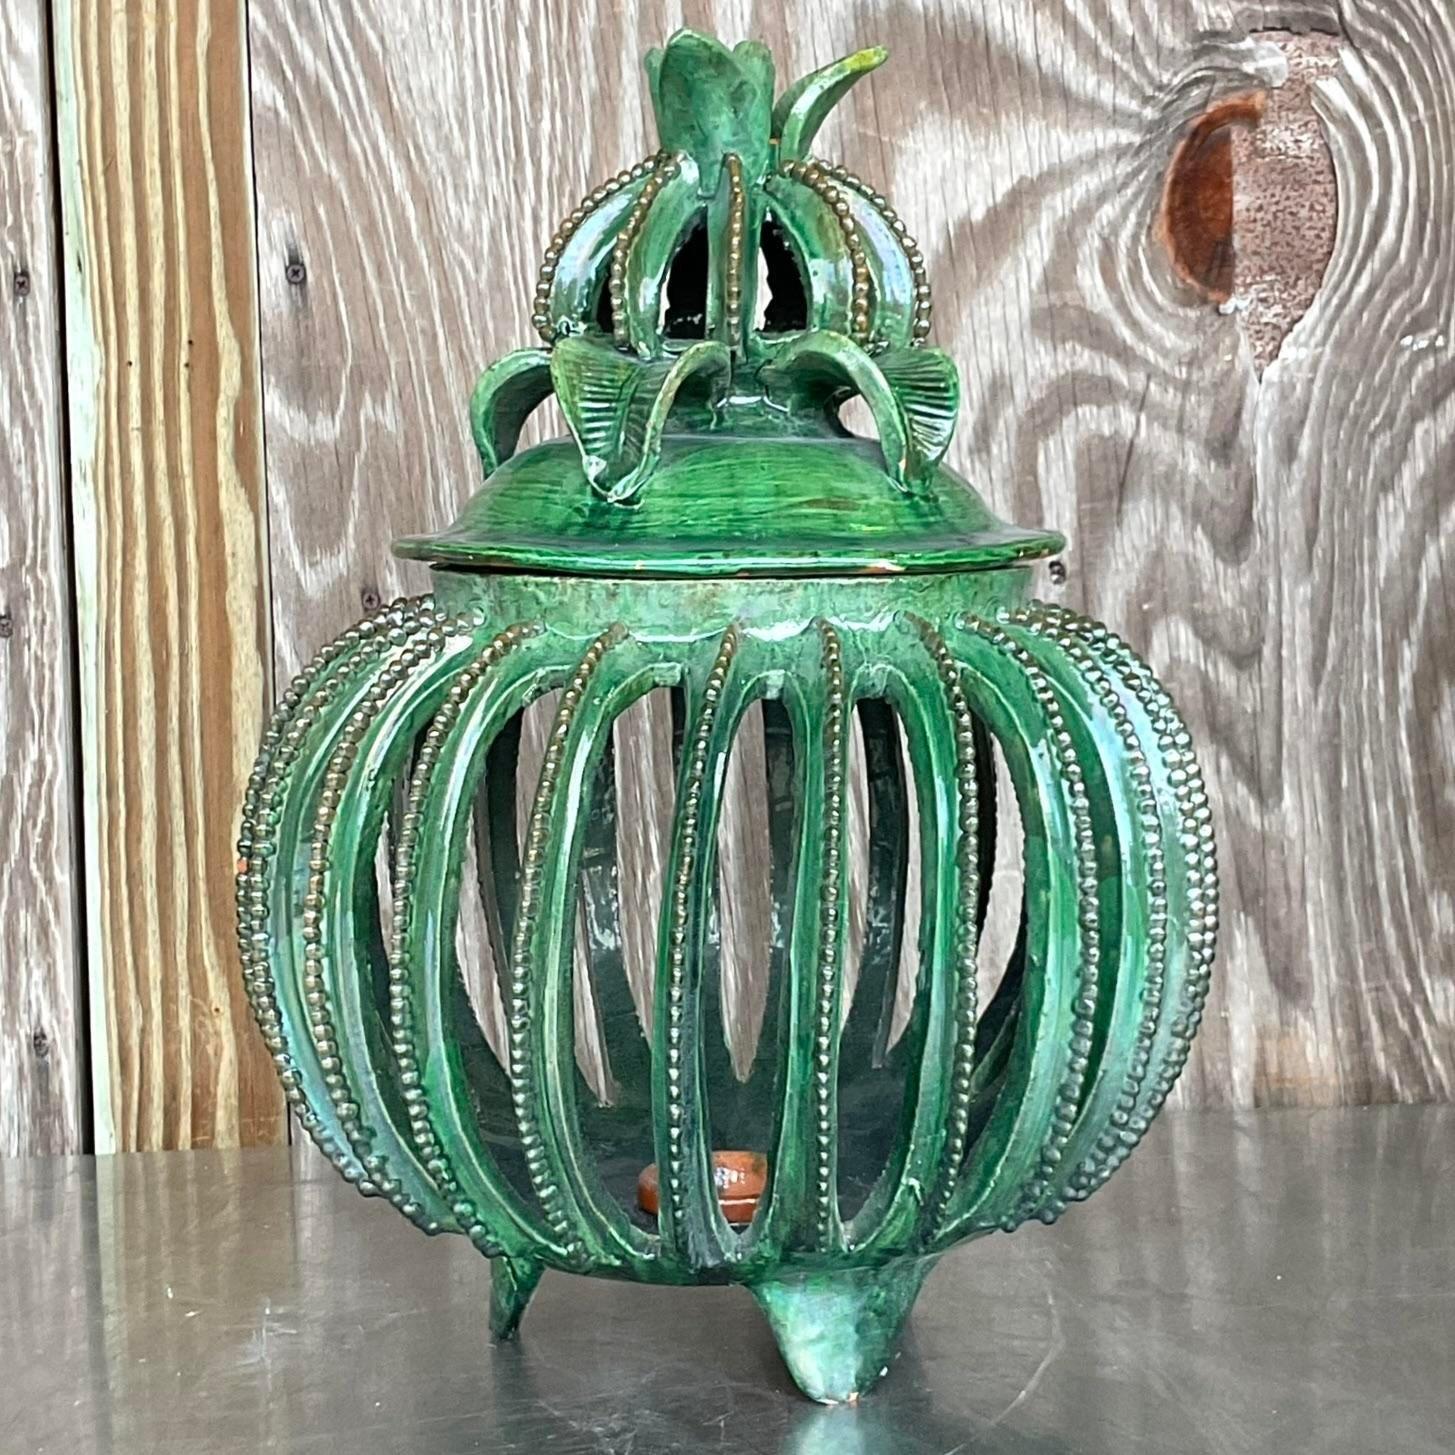  atemberaubende vintage boho ananas. Hergestellt von dem berühmten mexikanischen Keramiker Hilario Alejo Madrigal. Eine leuchtend grün glasierte Keramikform. Erworben aus einem Nachlass in Palm Beach.